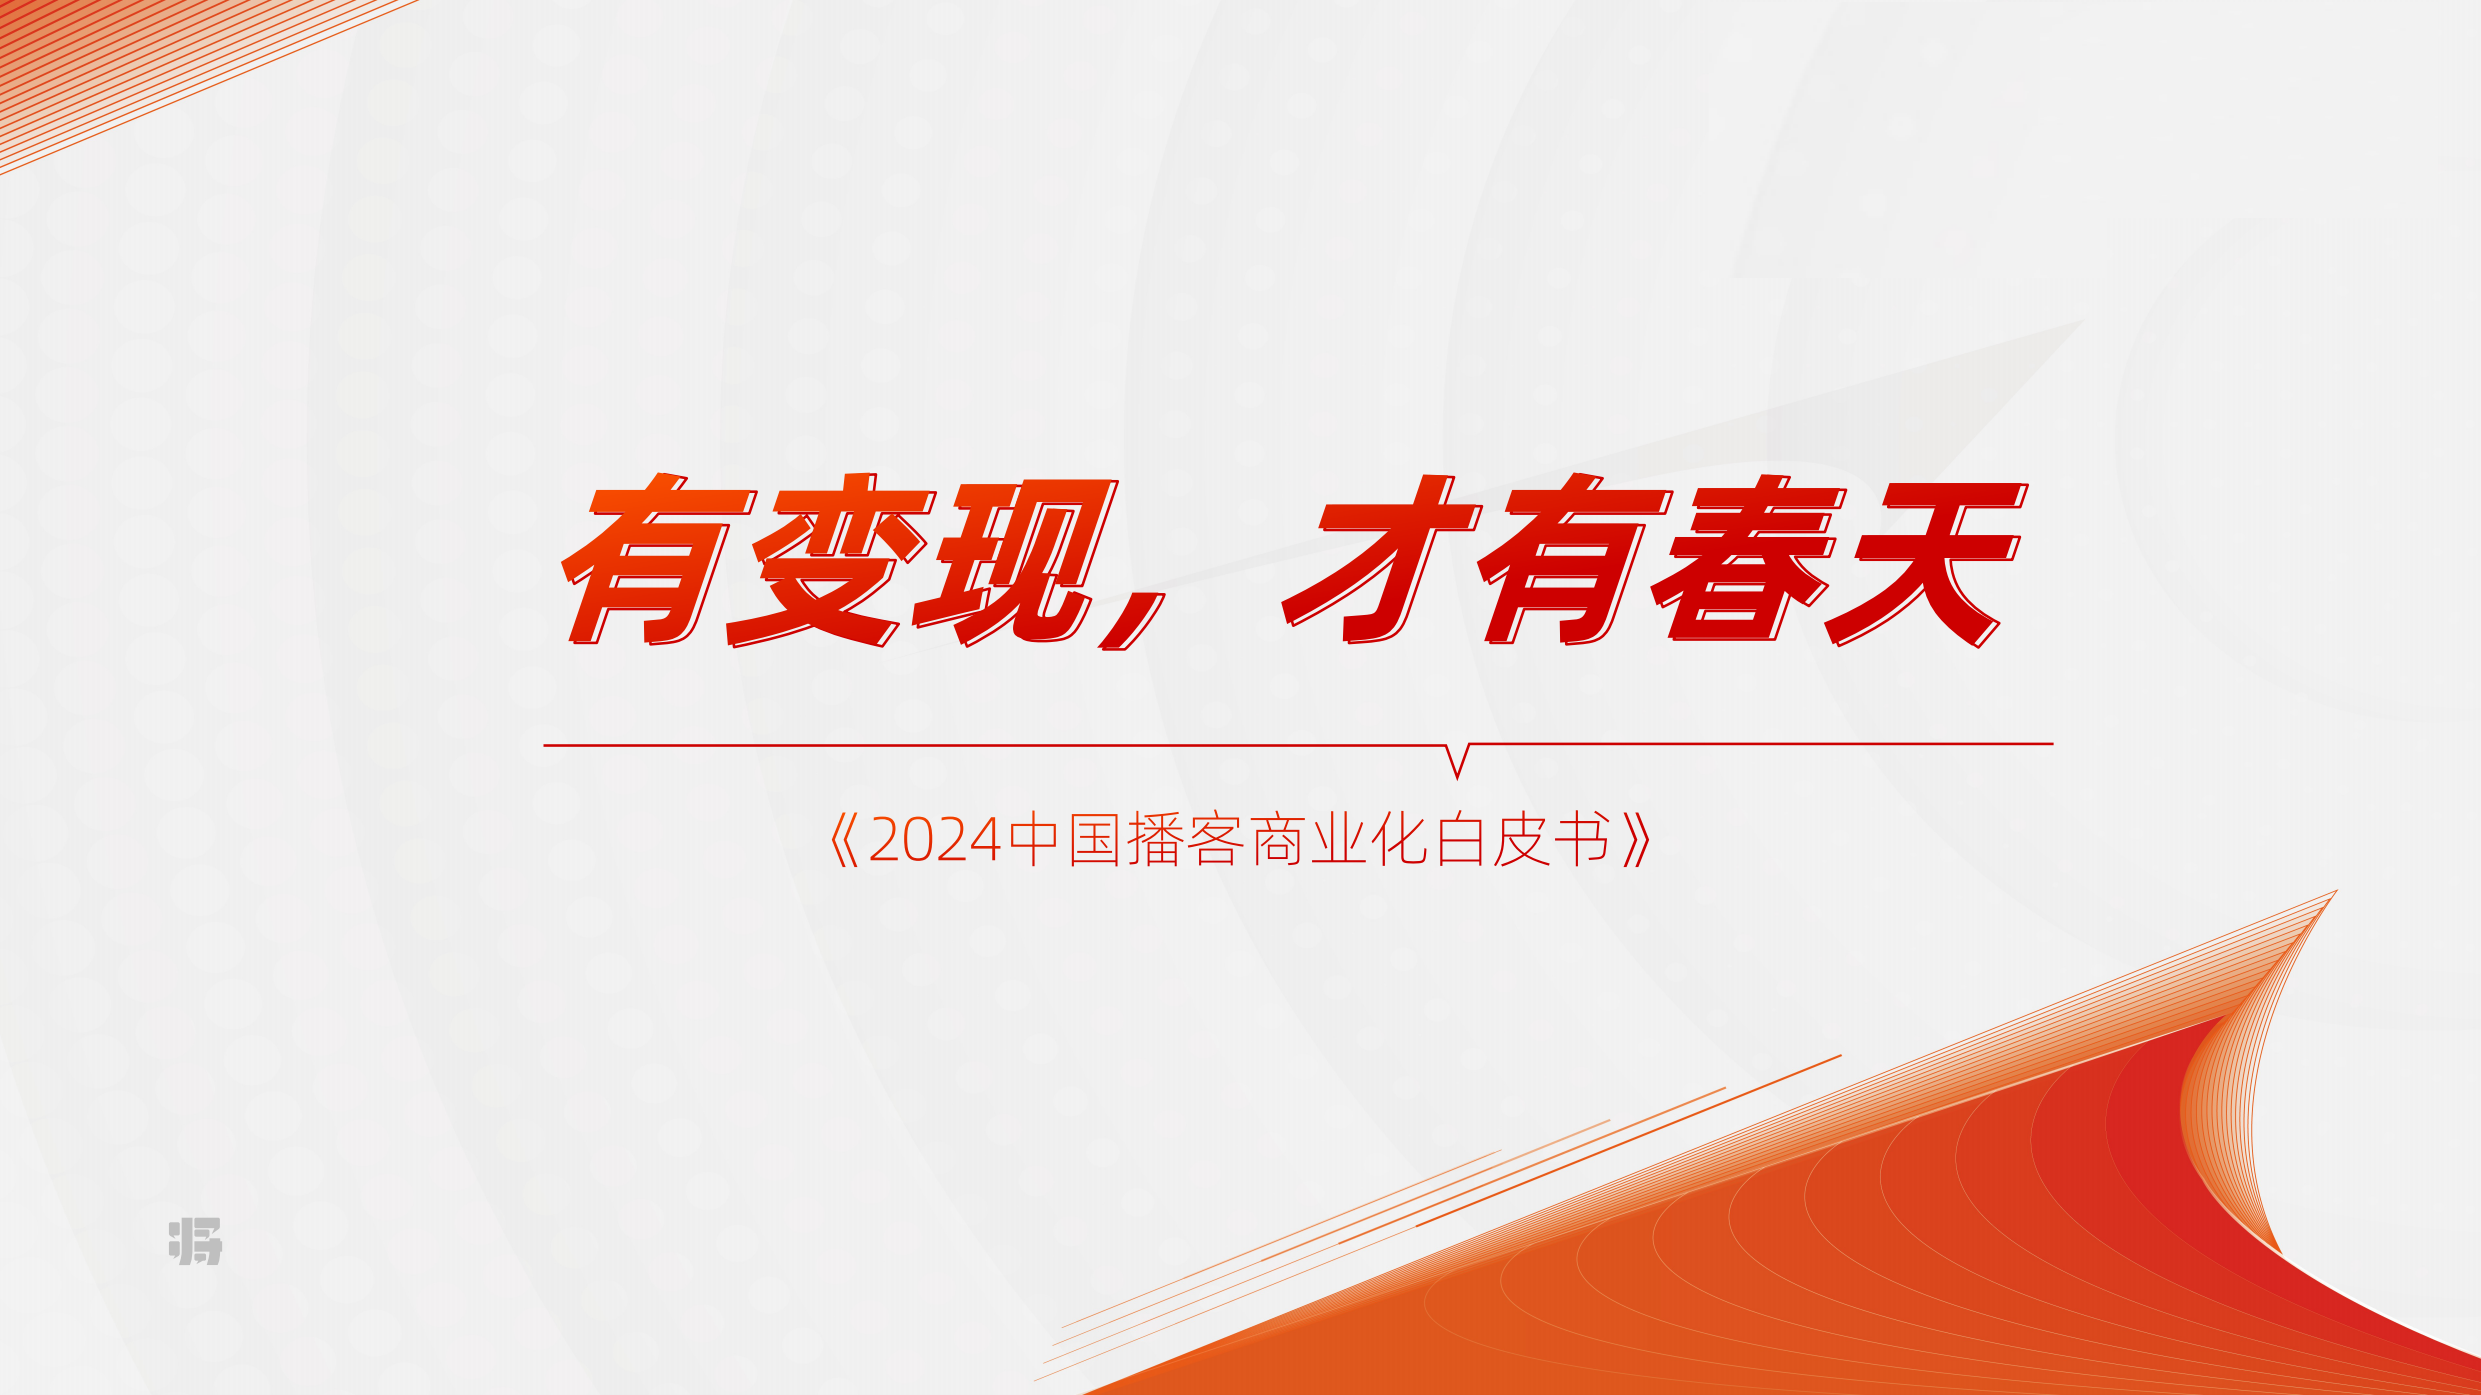 2024中国播客商业化白皮书-刀法x梁将军-202404.pdf